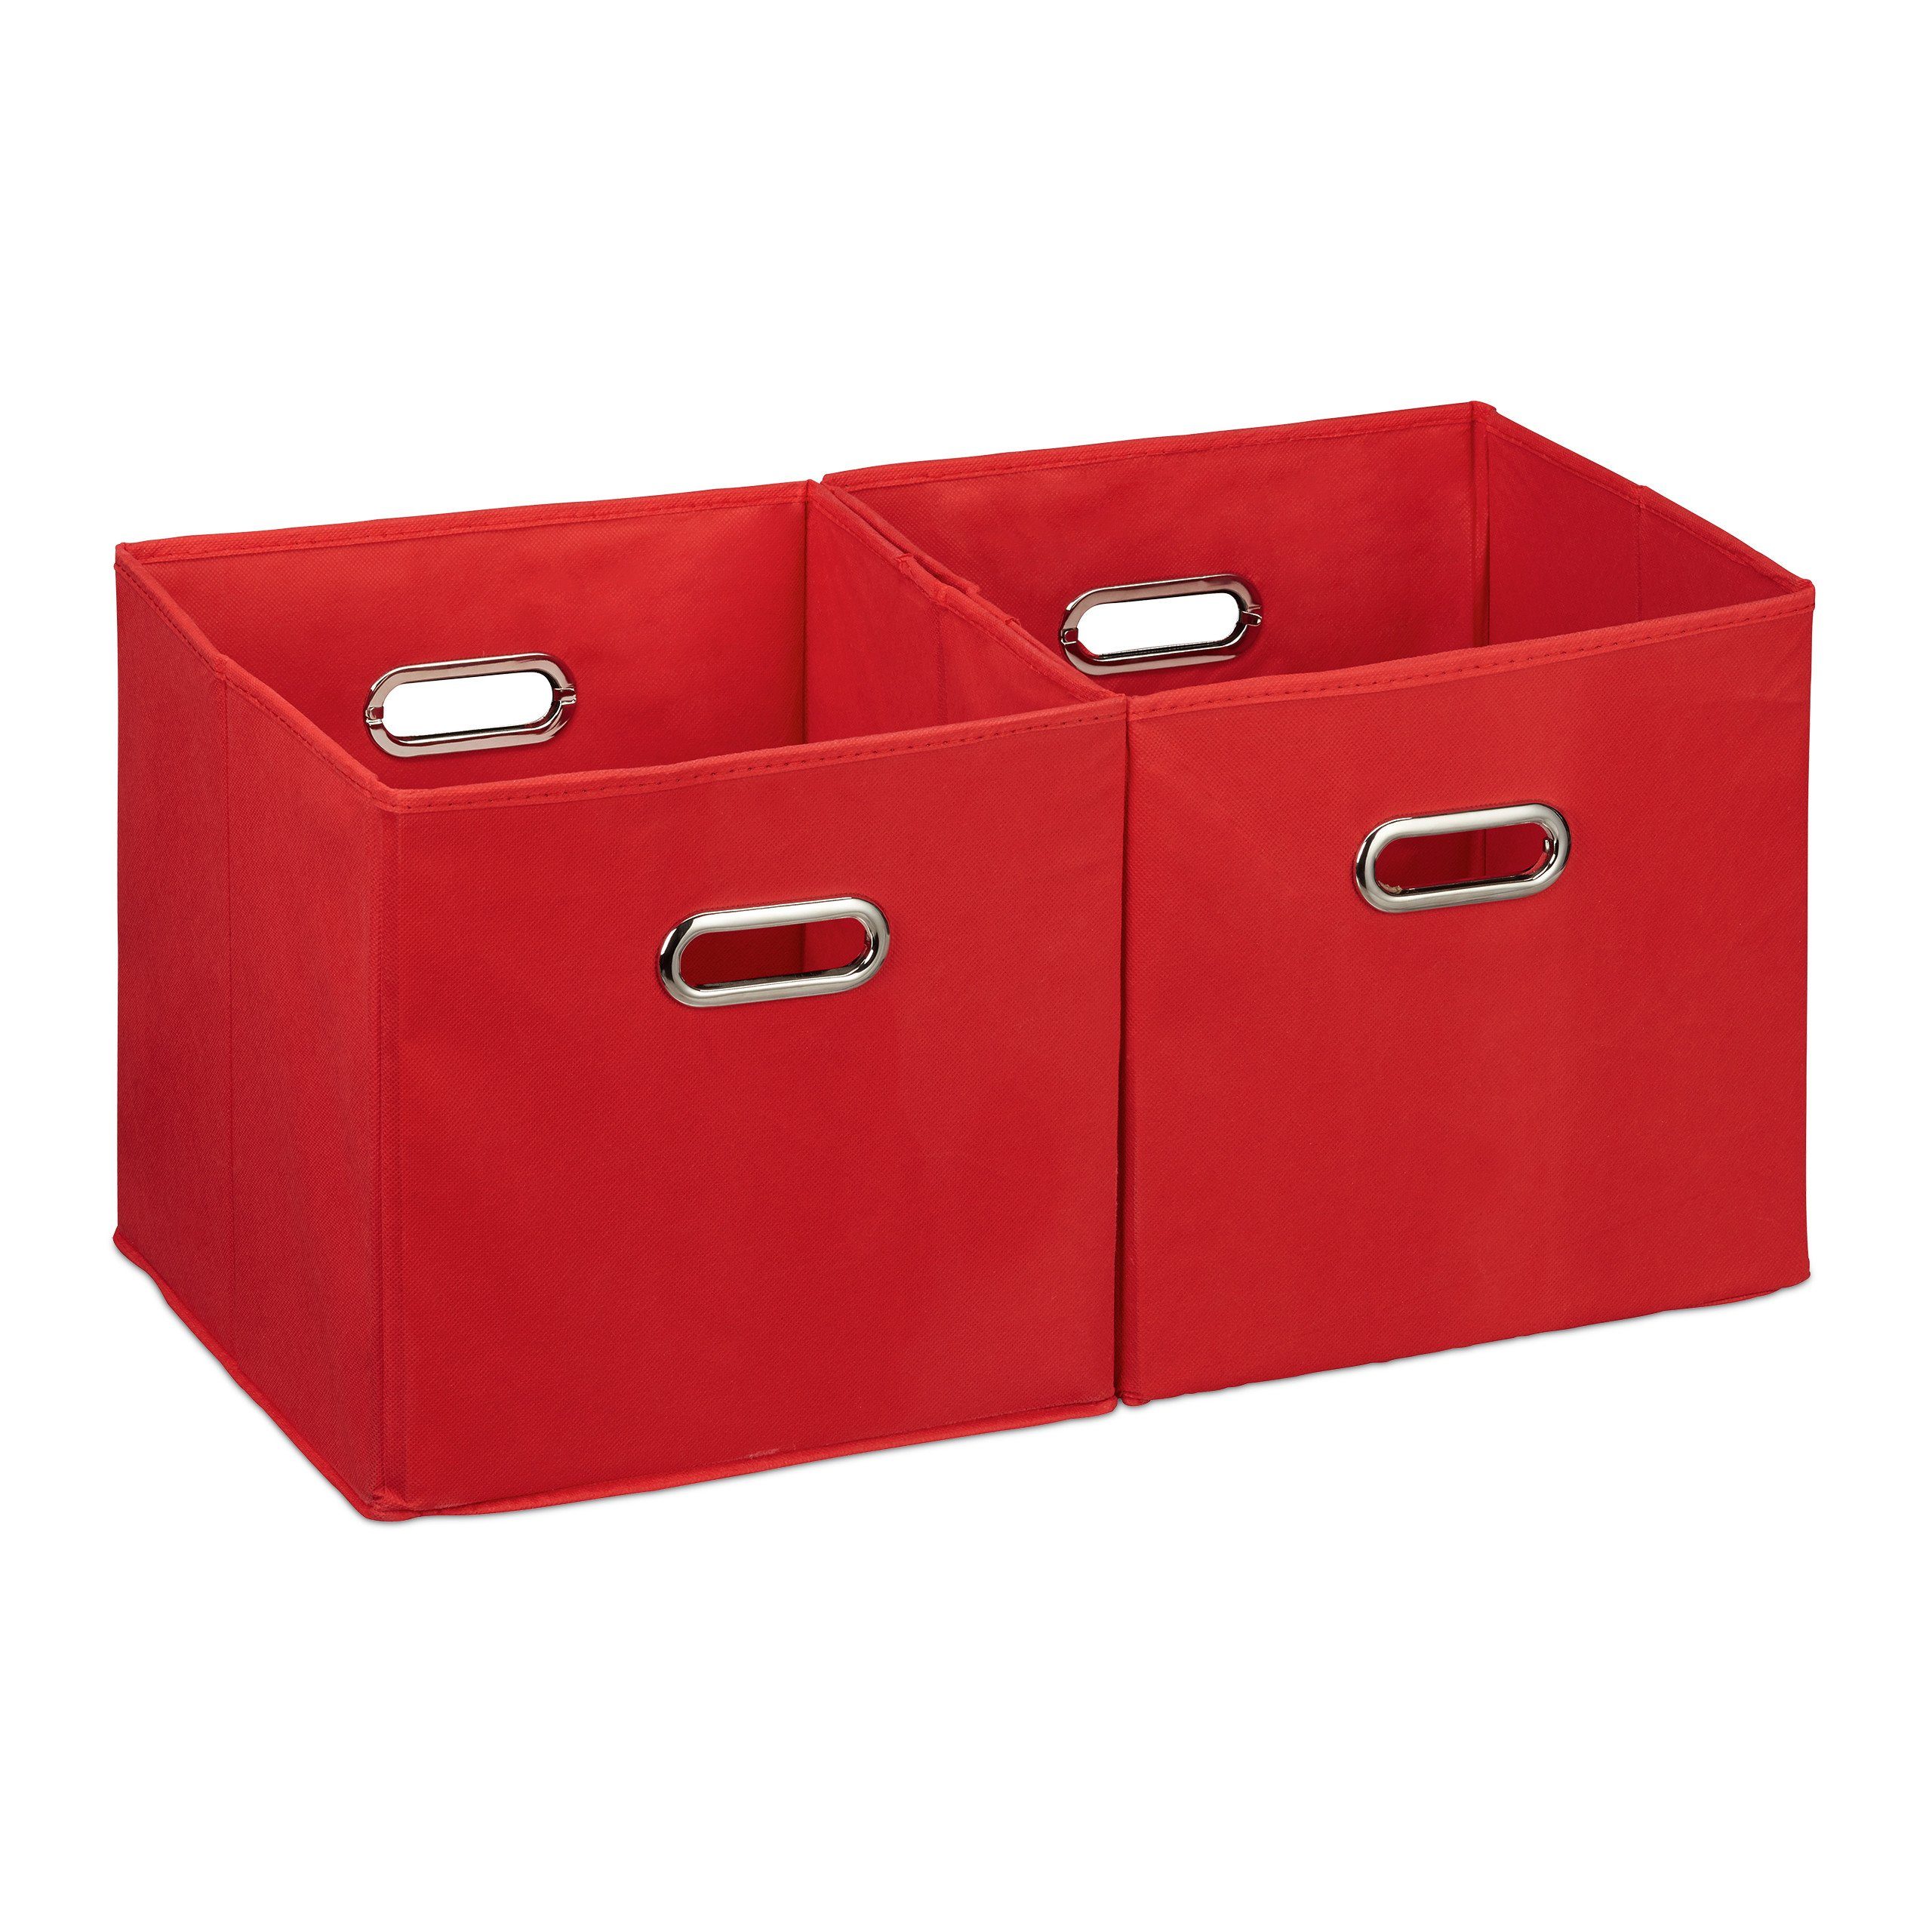 relaxdays Aufbewahrungskorb 2 x Aufbewahrungsbox Stoff rot